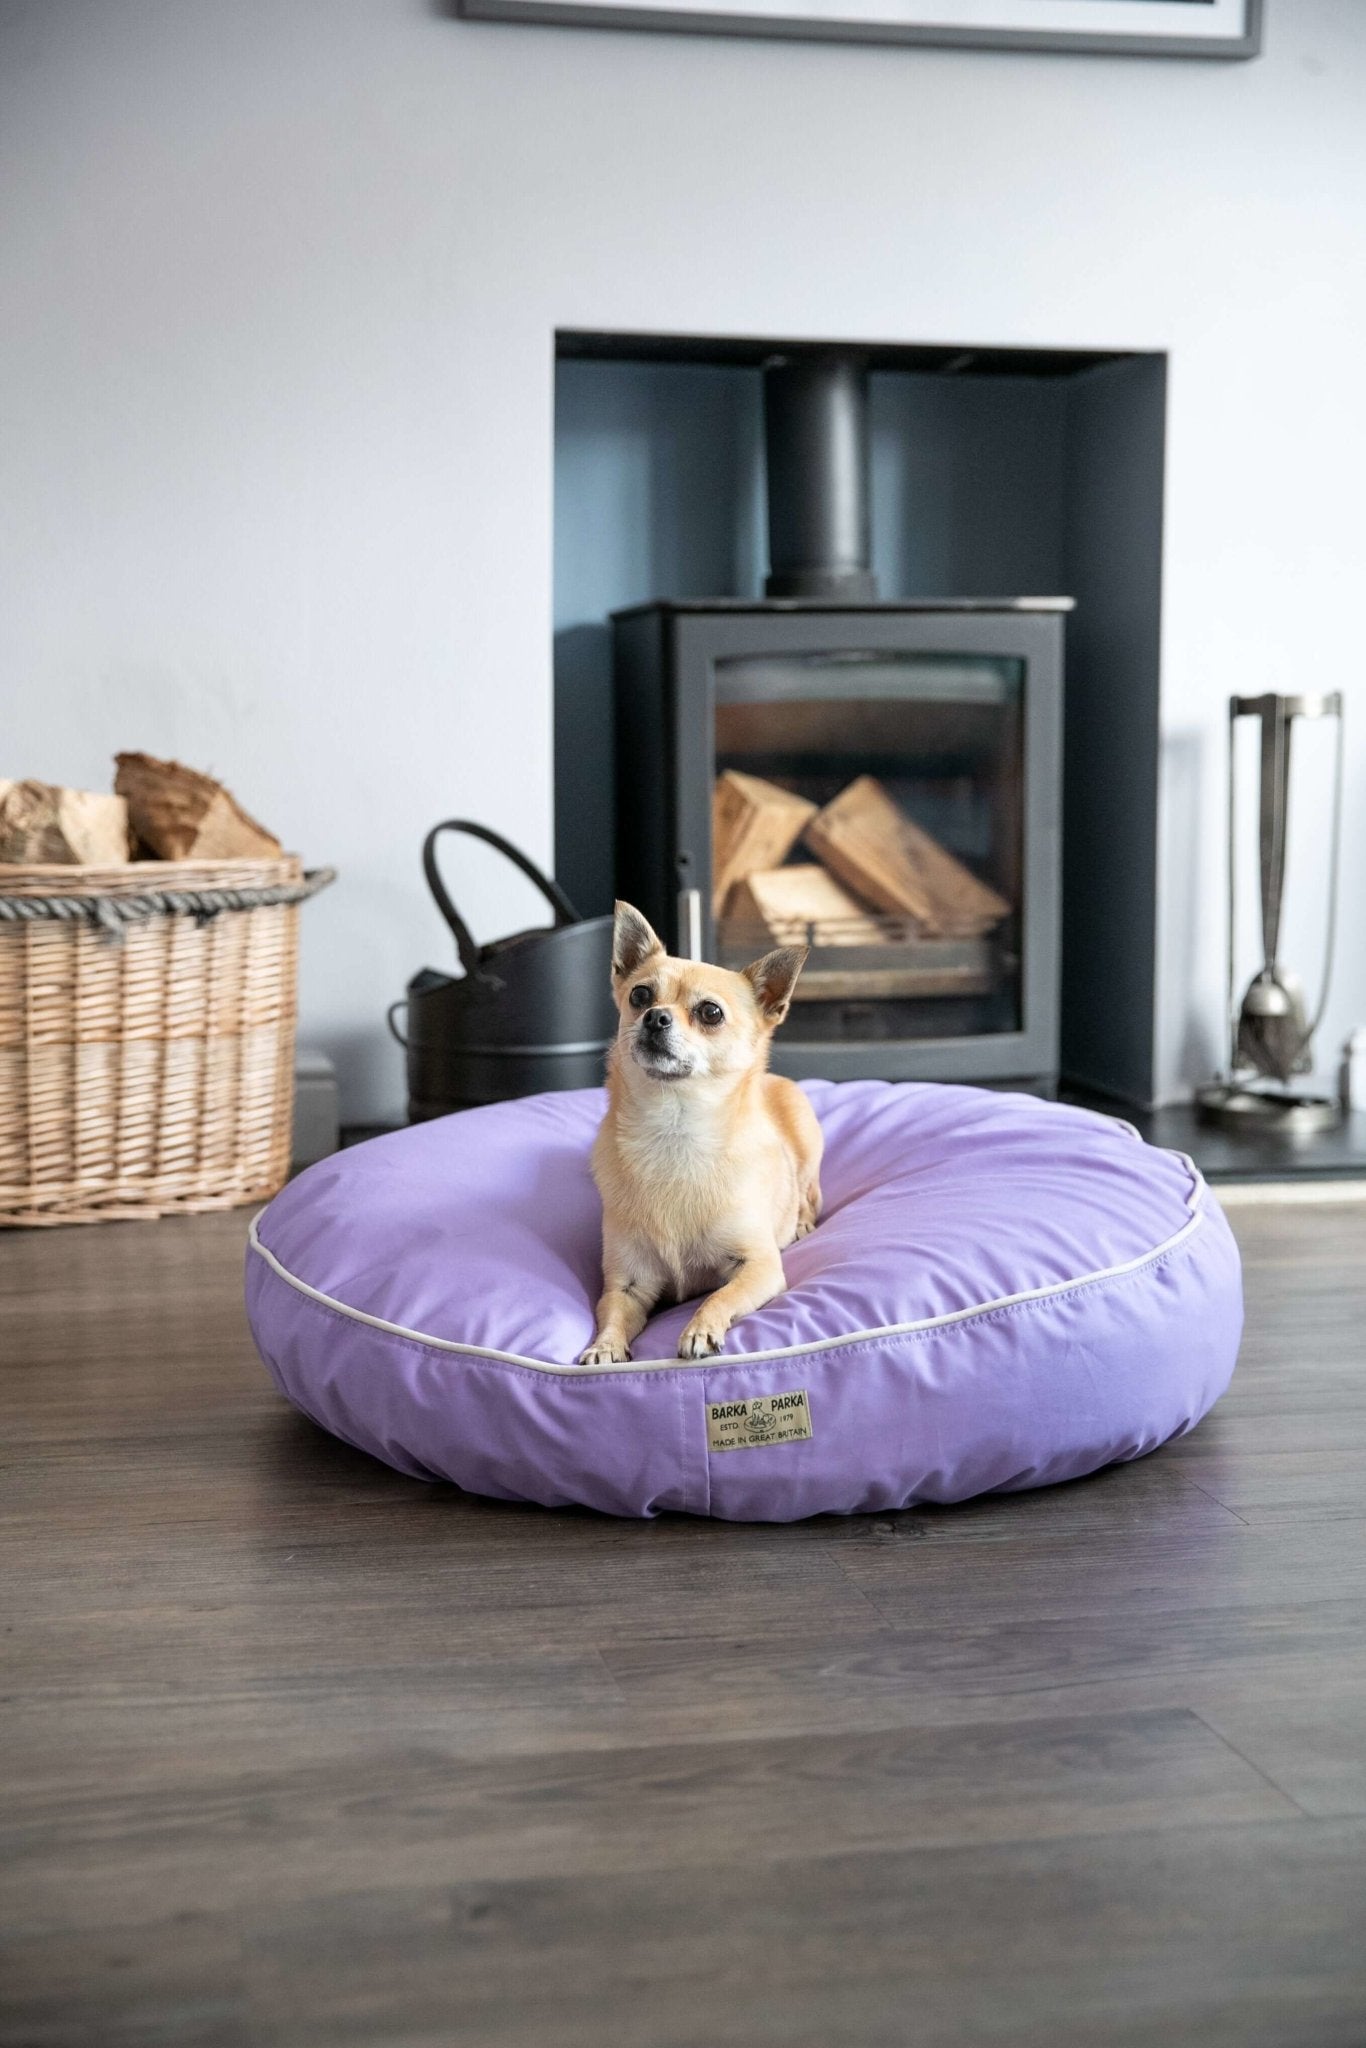 Barka Parka Dog Bed - Lilac and cream piping - Barka Parka Dog Beds